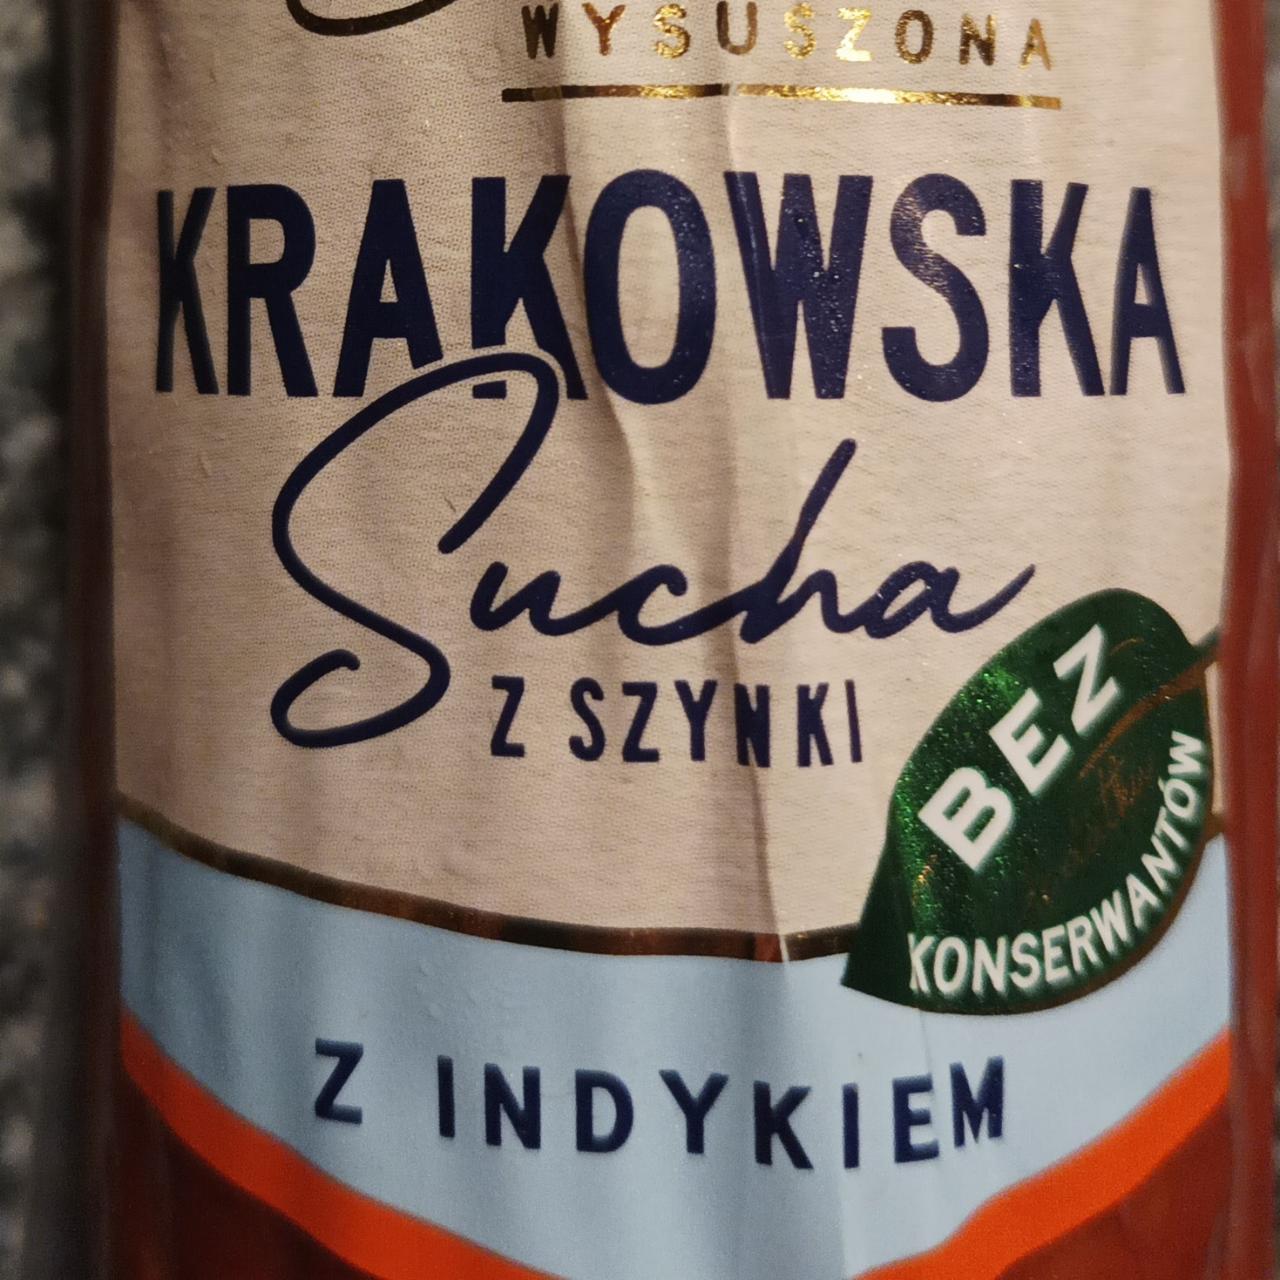 Fotografie - Krakowska Sucha z Szynki z Indykiem Extra Wysuszon Tarczyński